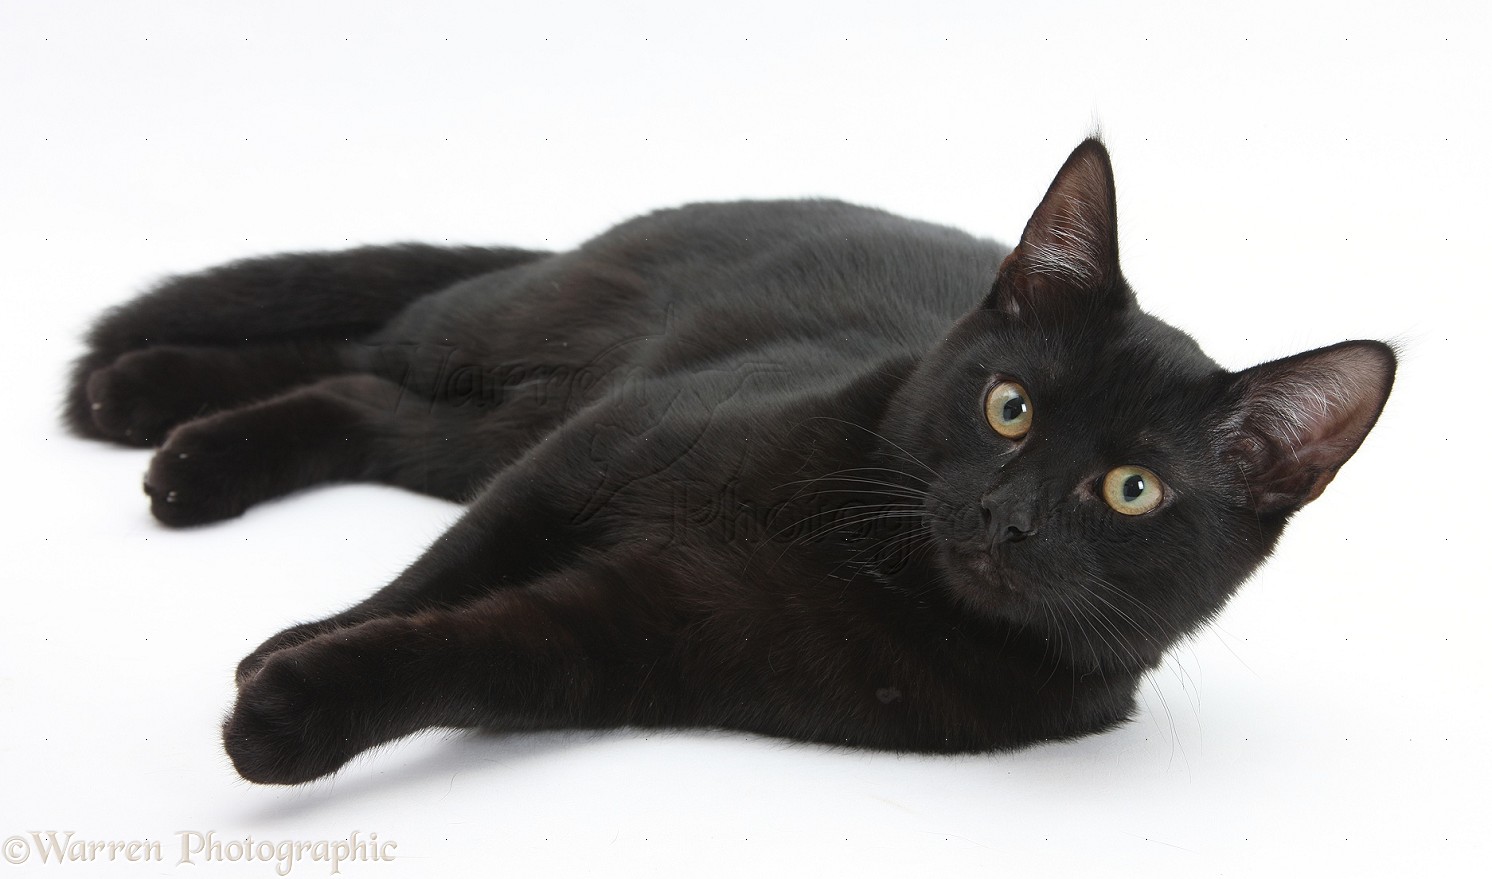 Black Cat #6